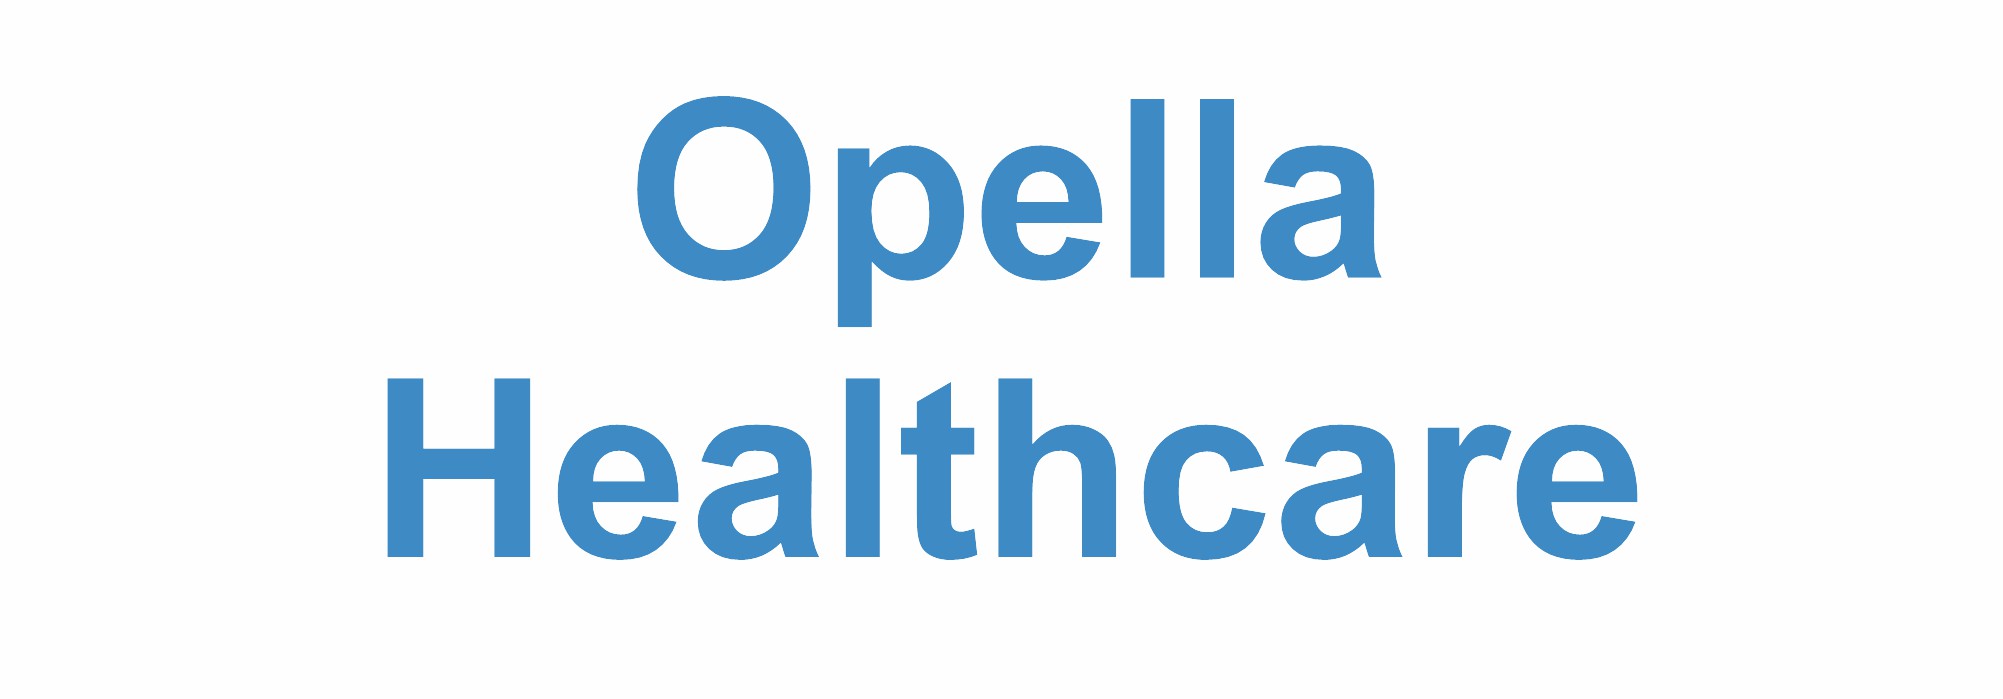 Opella Healthcare